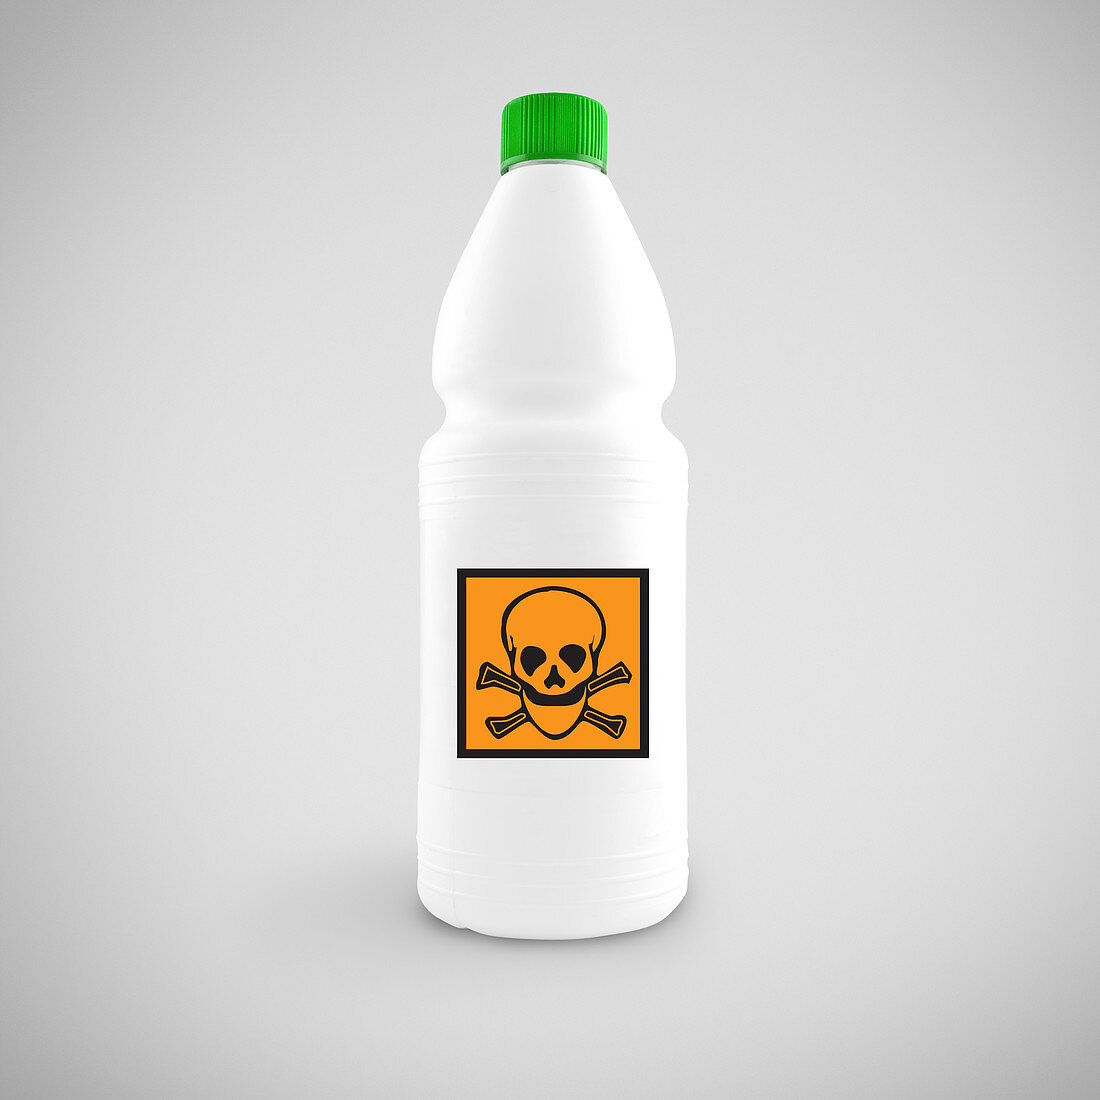 Bottle with hazard symbol